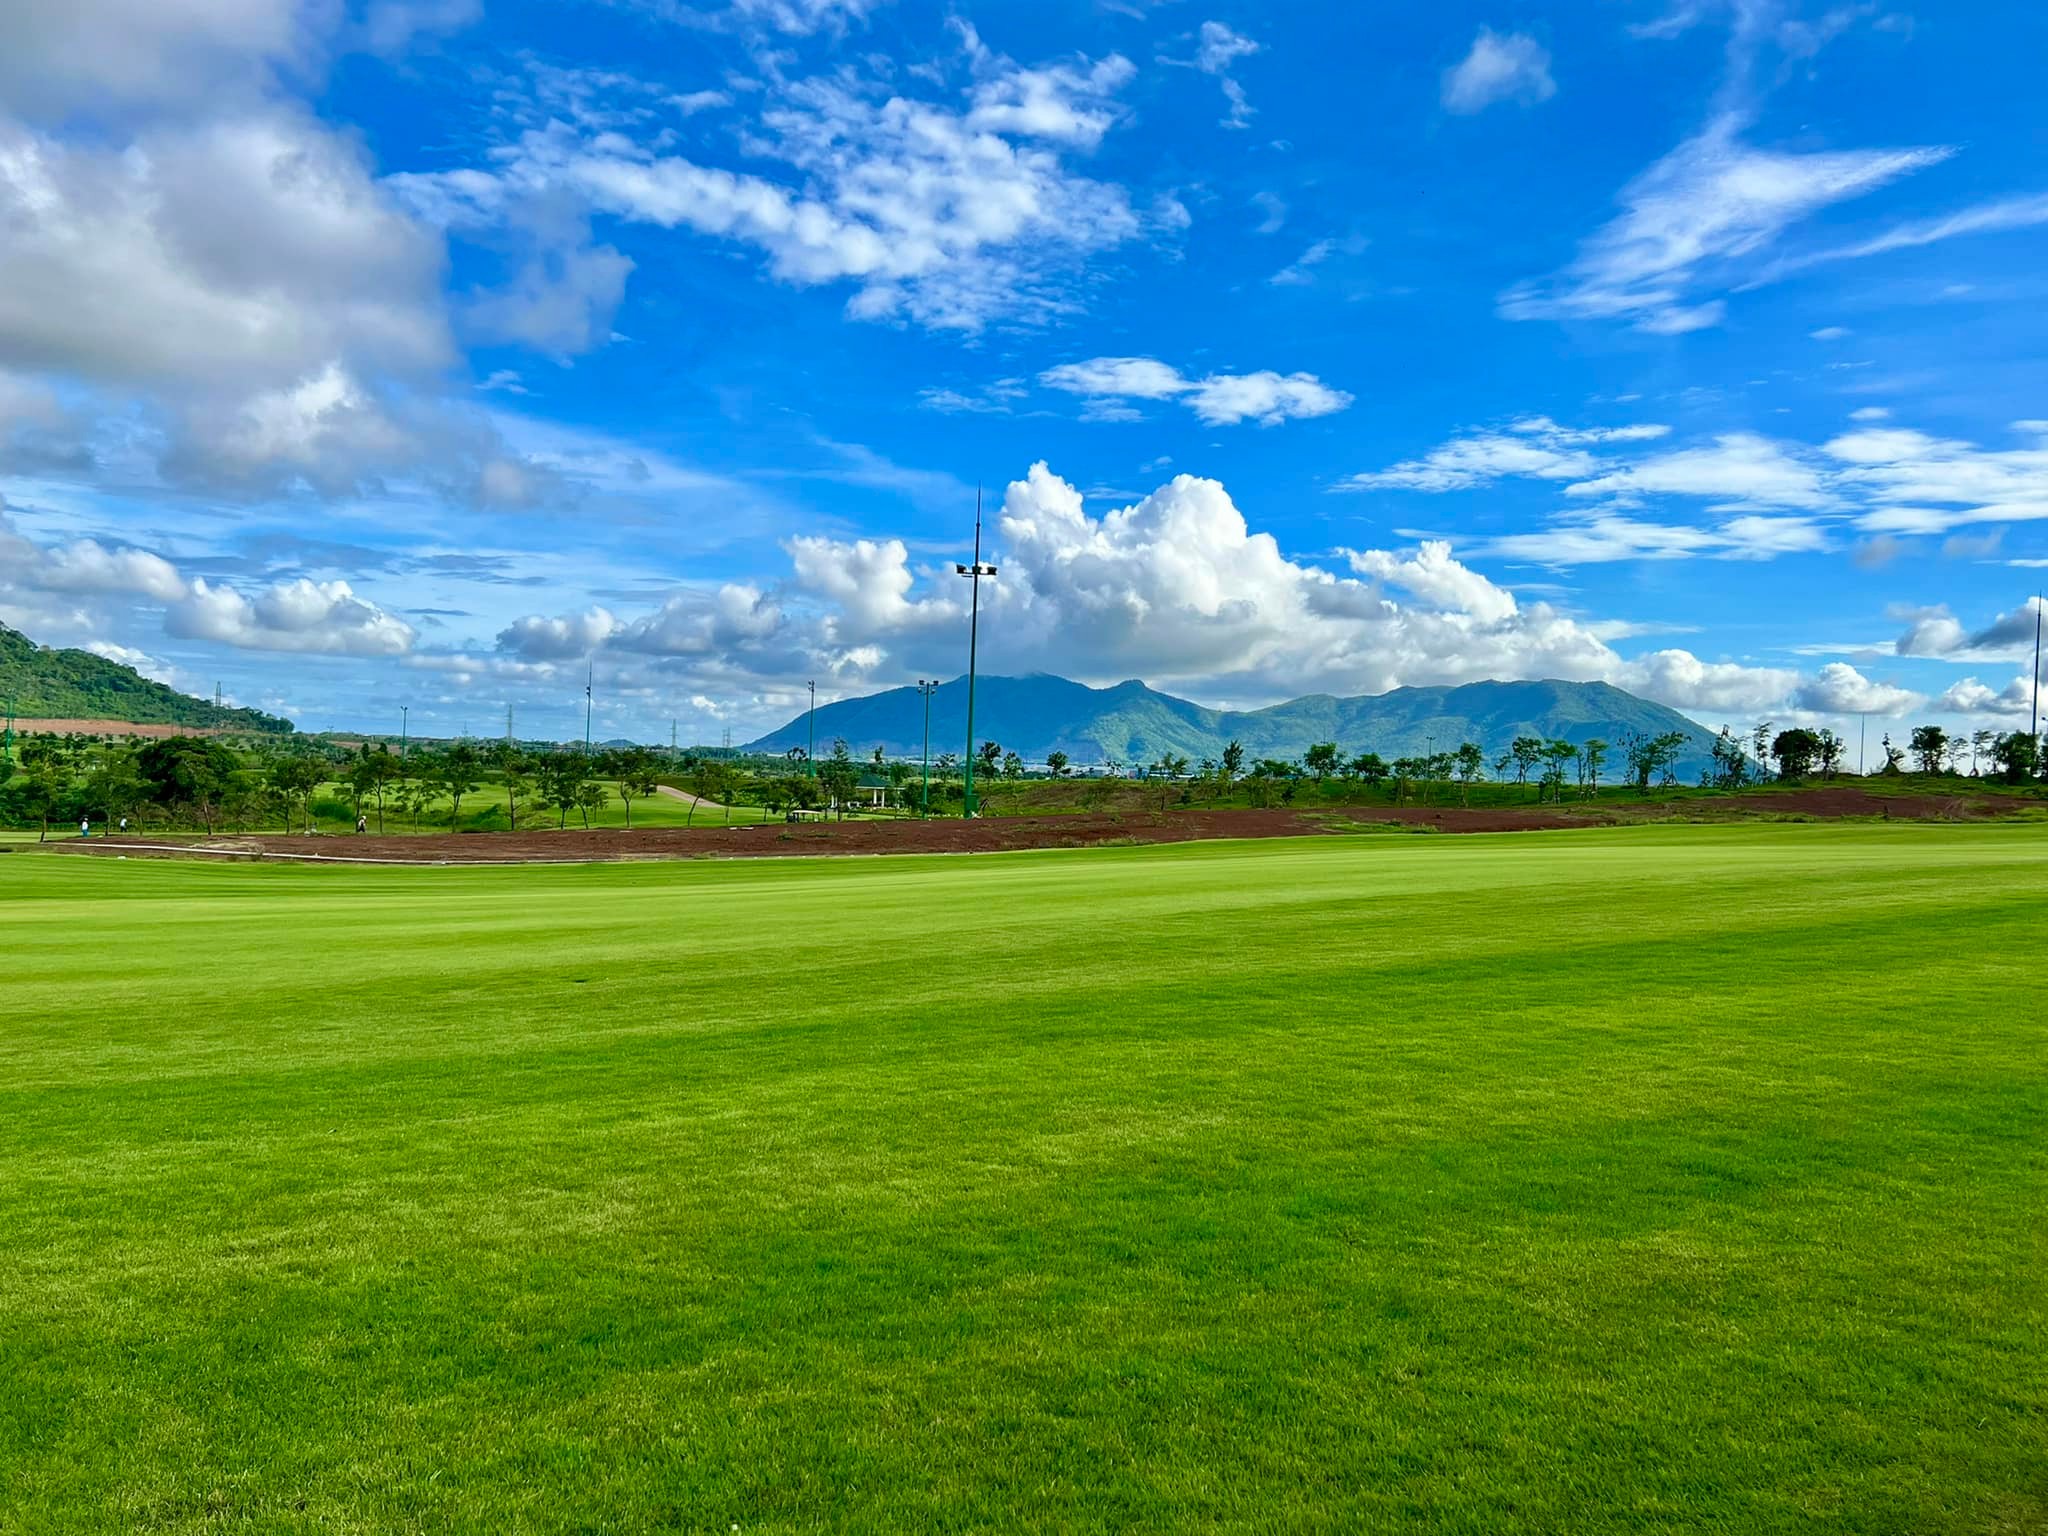 Sonadezi Châu Đức - Sân golf châu đức vũng tàu điểm đến thú vị San-golf-Chau-Duc-Vung-Tau-1